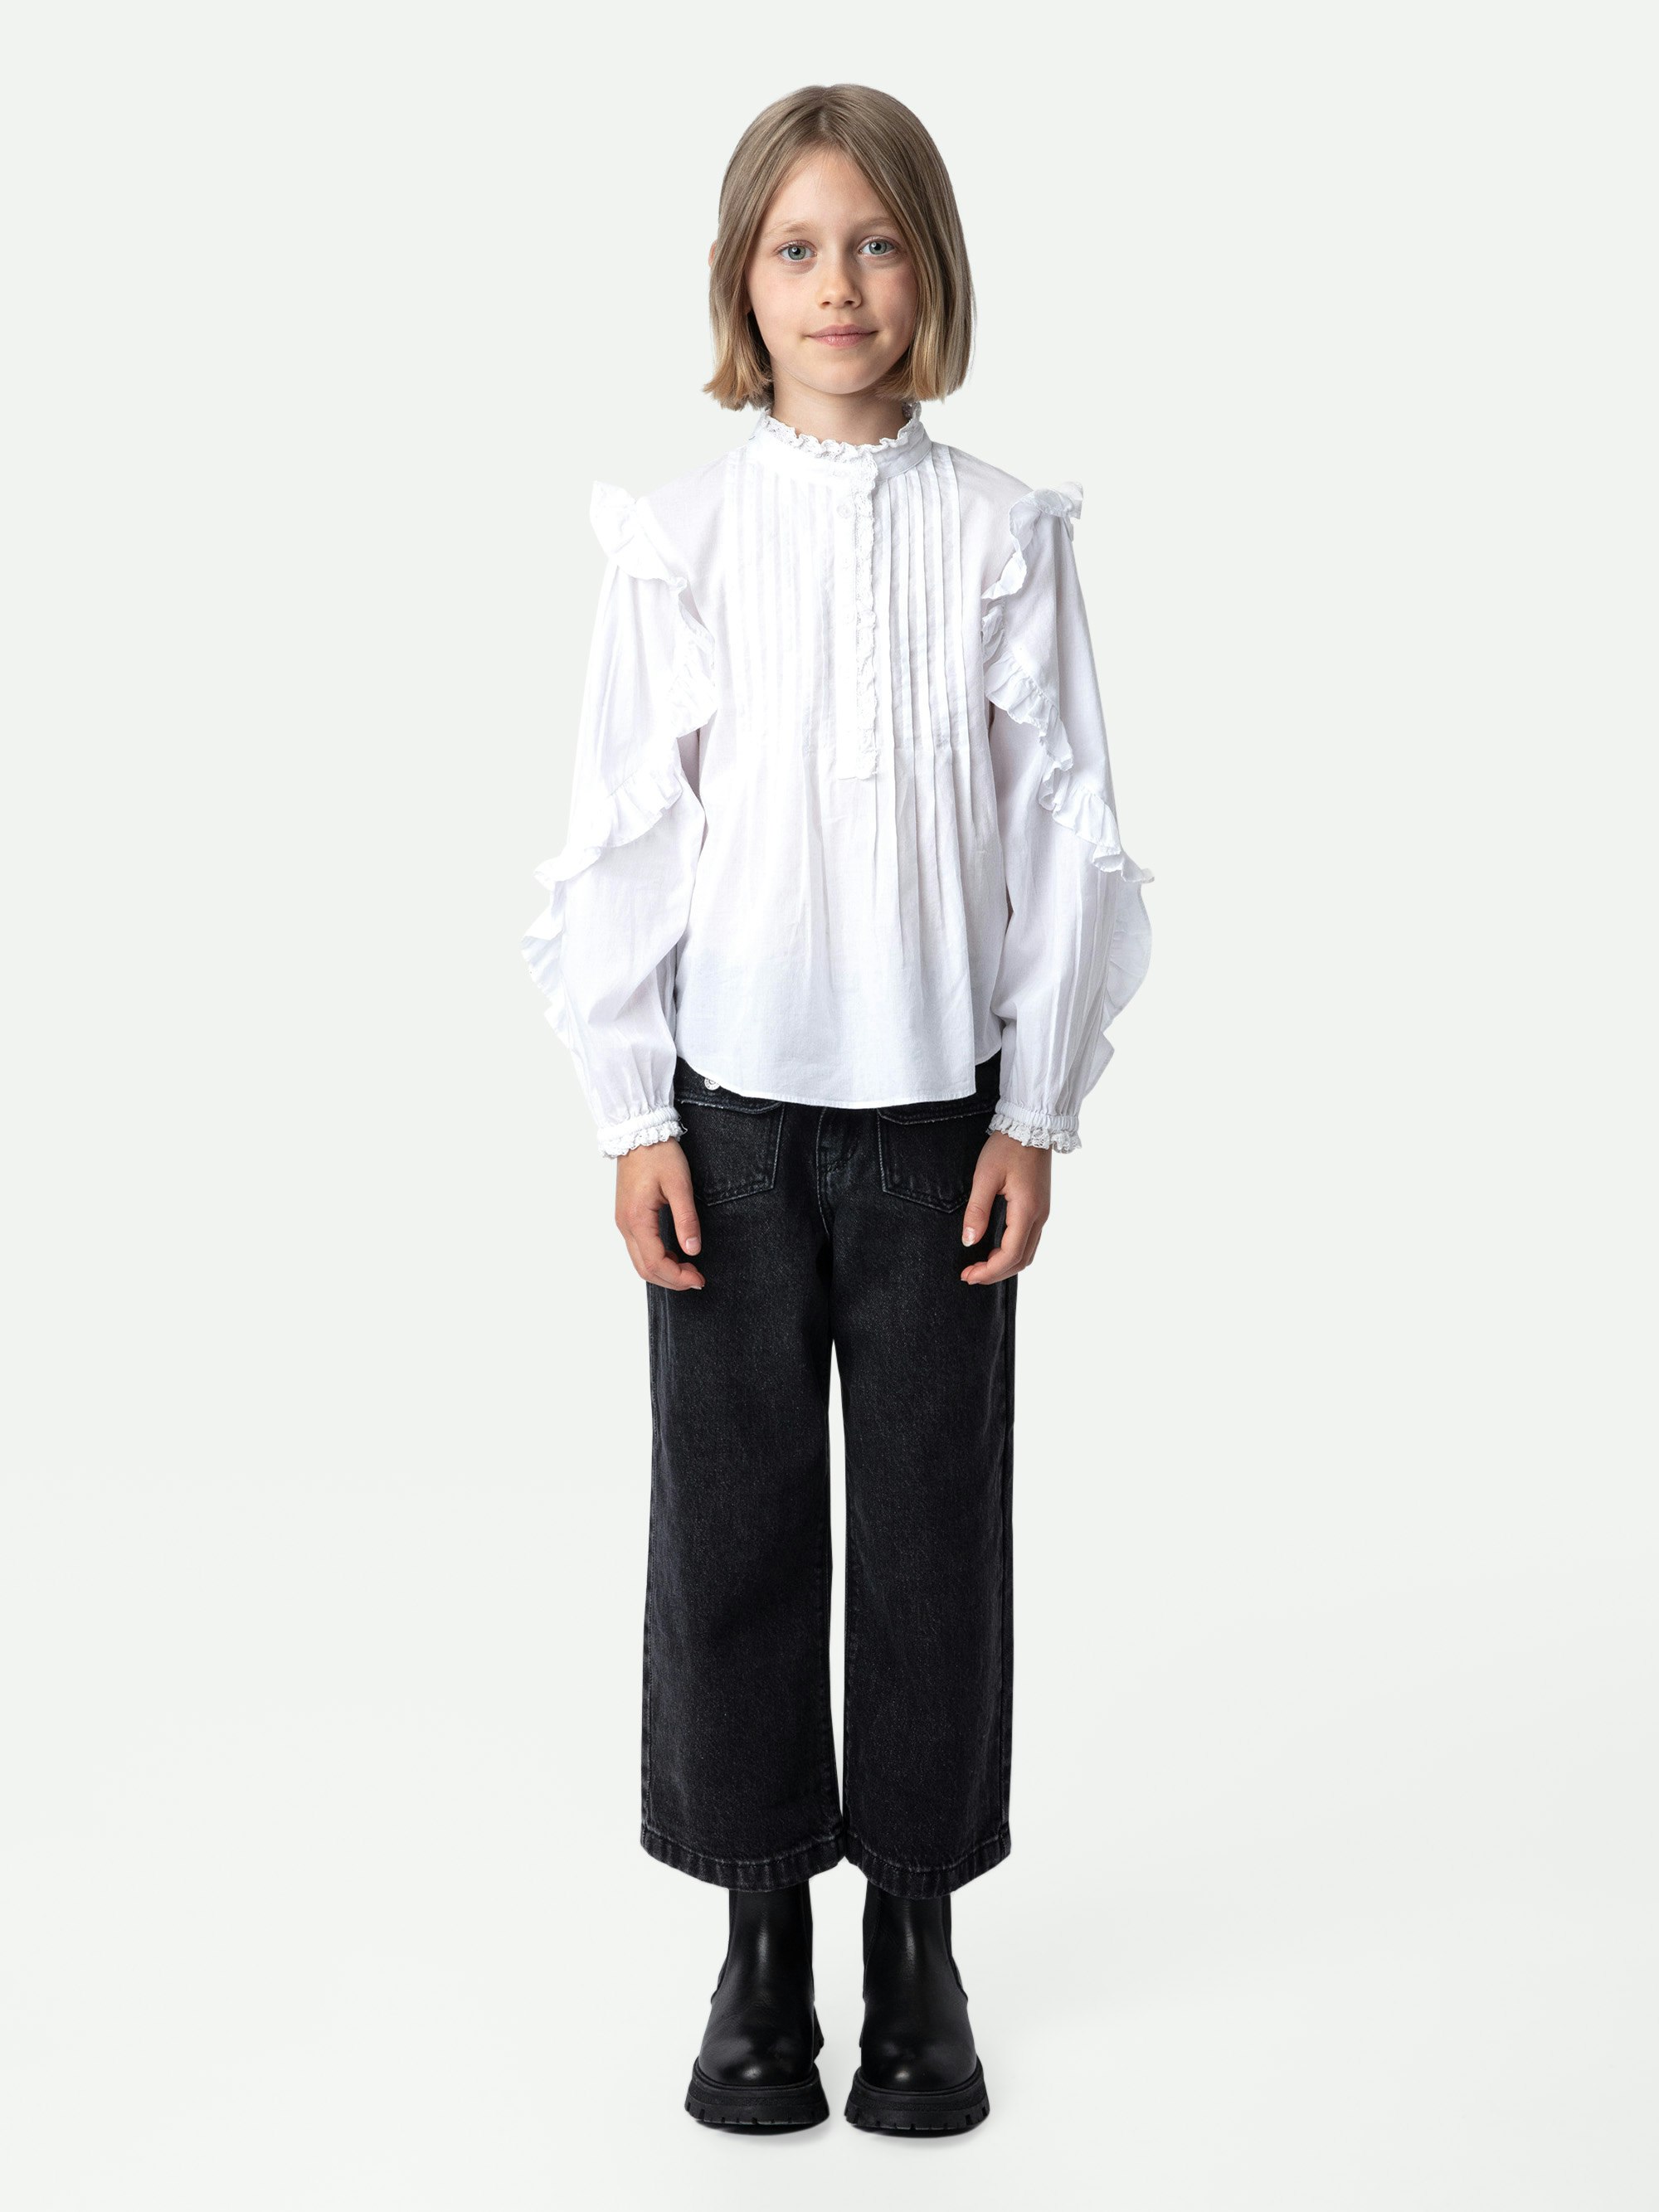 Blusa Timmy Niña - Blusa blanca de gasa de algodón con volantes para niña.